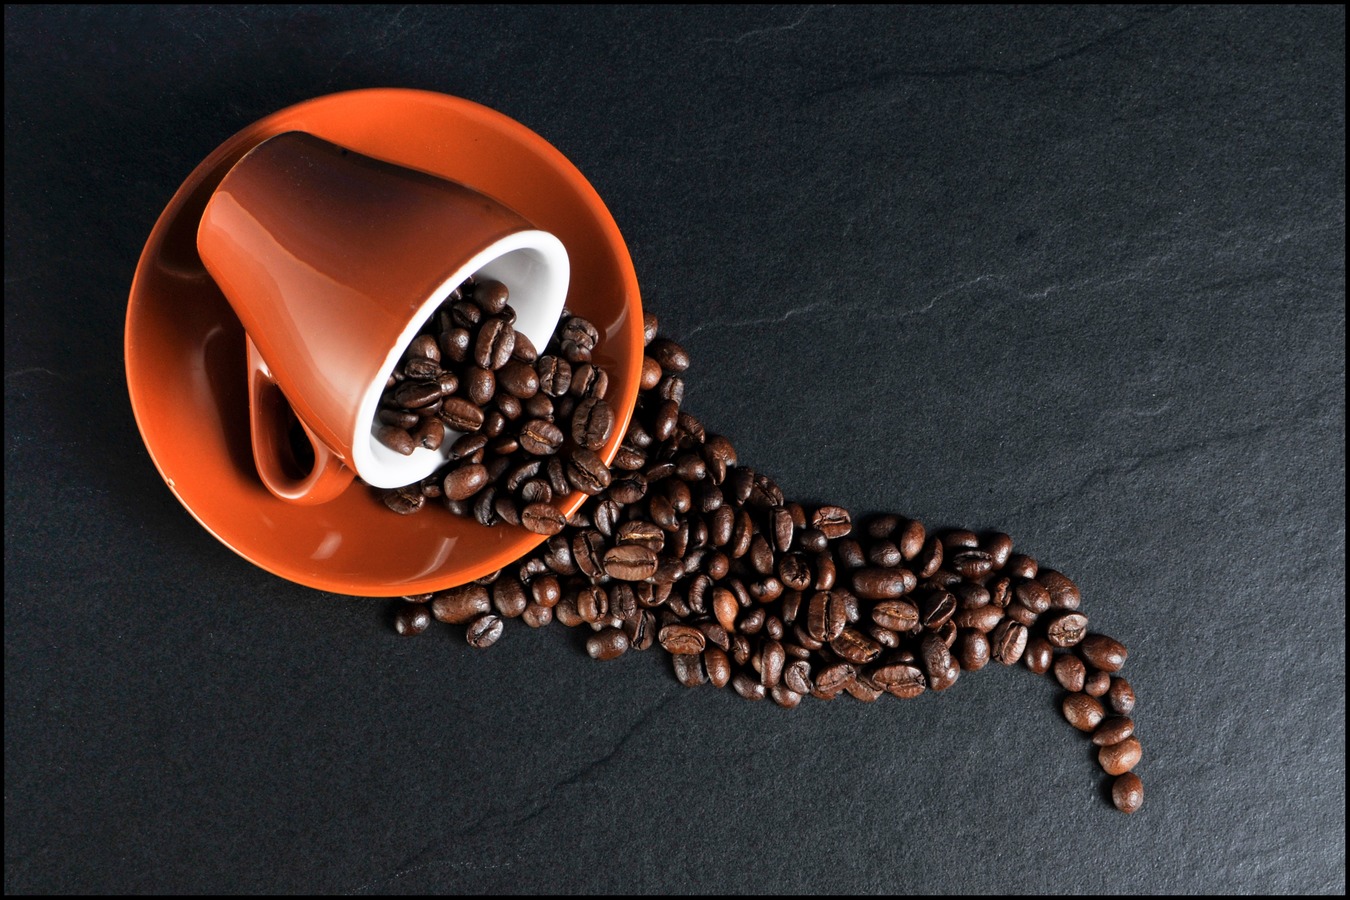 coffee-cup-coffee-cup-organ-beans-coffee-beans-1020725-pxhere.com.jpg